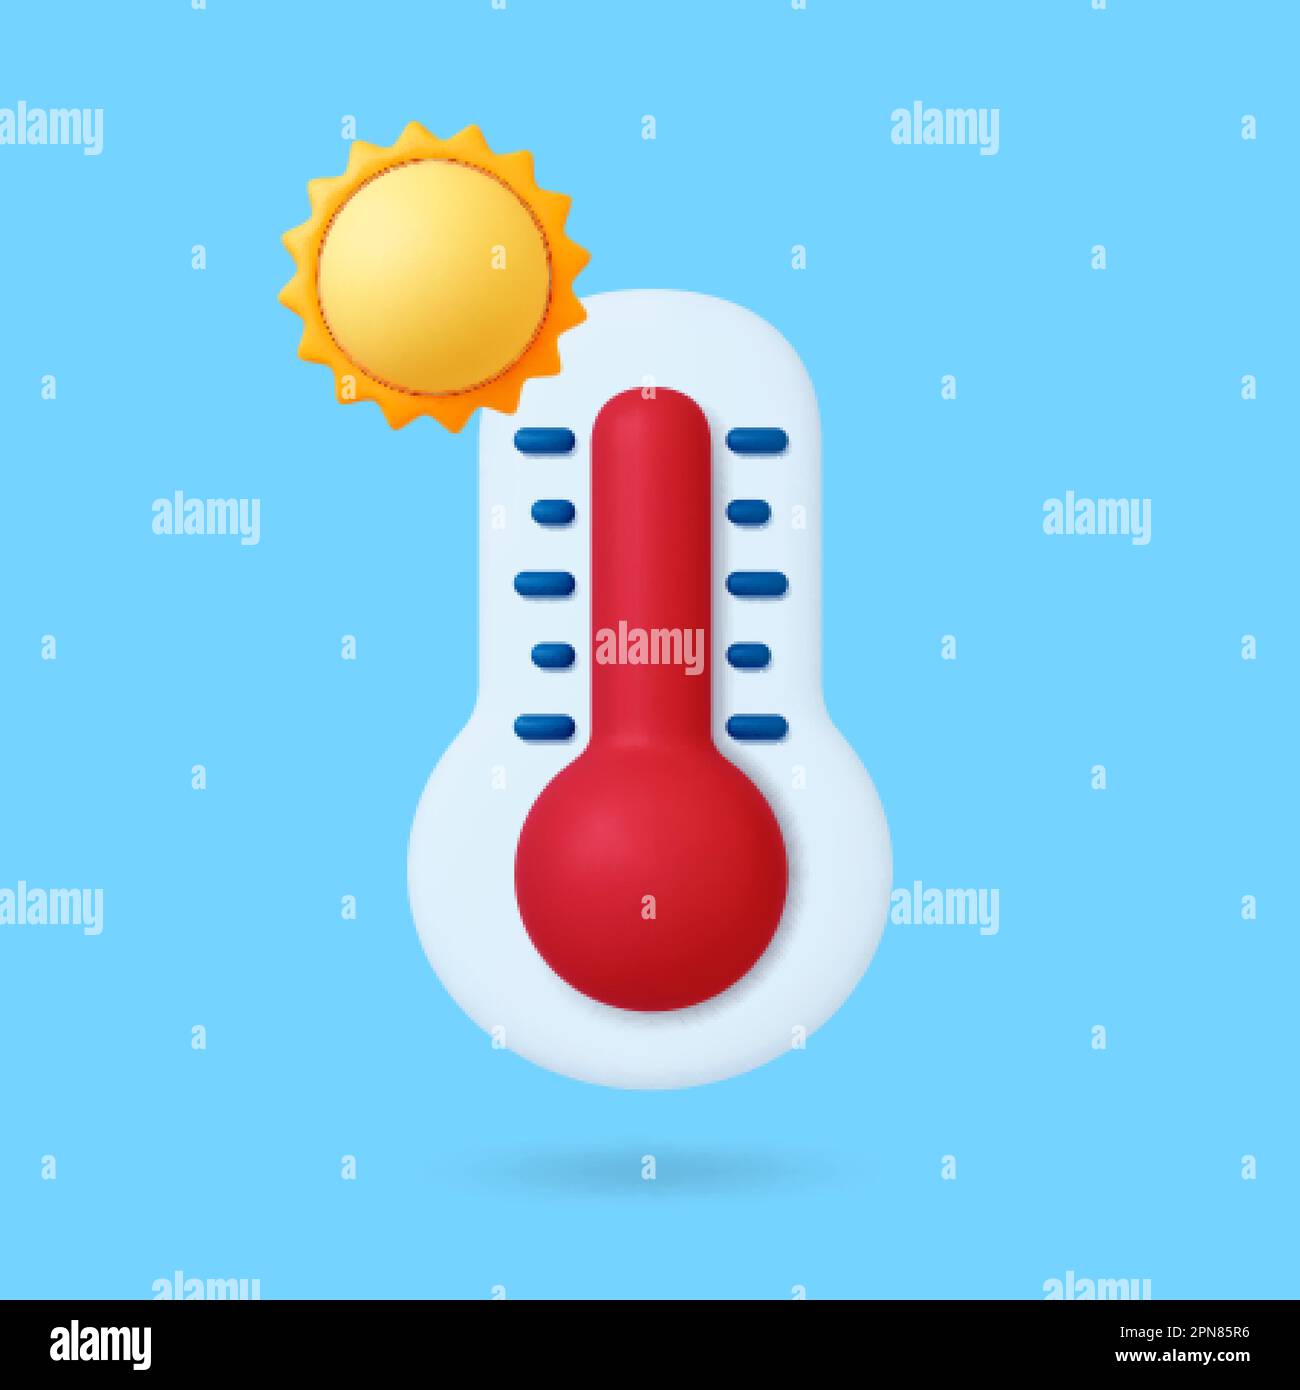 Wetterthermometer mit heißer Temperatur. 3D Sun, grafisches Prognoseelement. Realistisches Rendering-Vektorwärmesymbol für App, Webdesign, tv-Show Stock Vektor